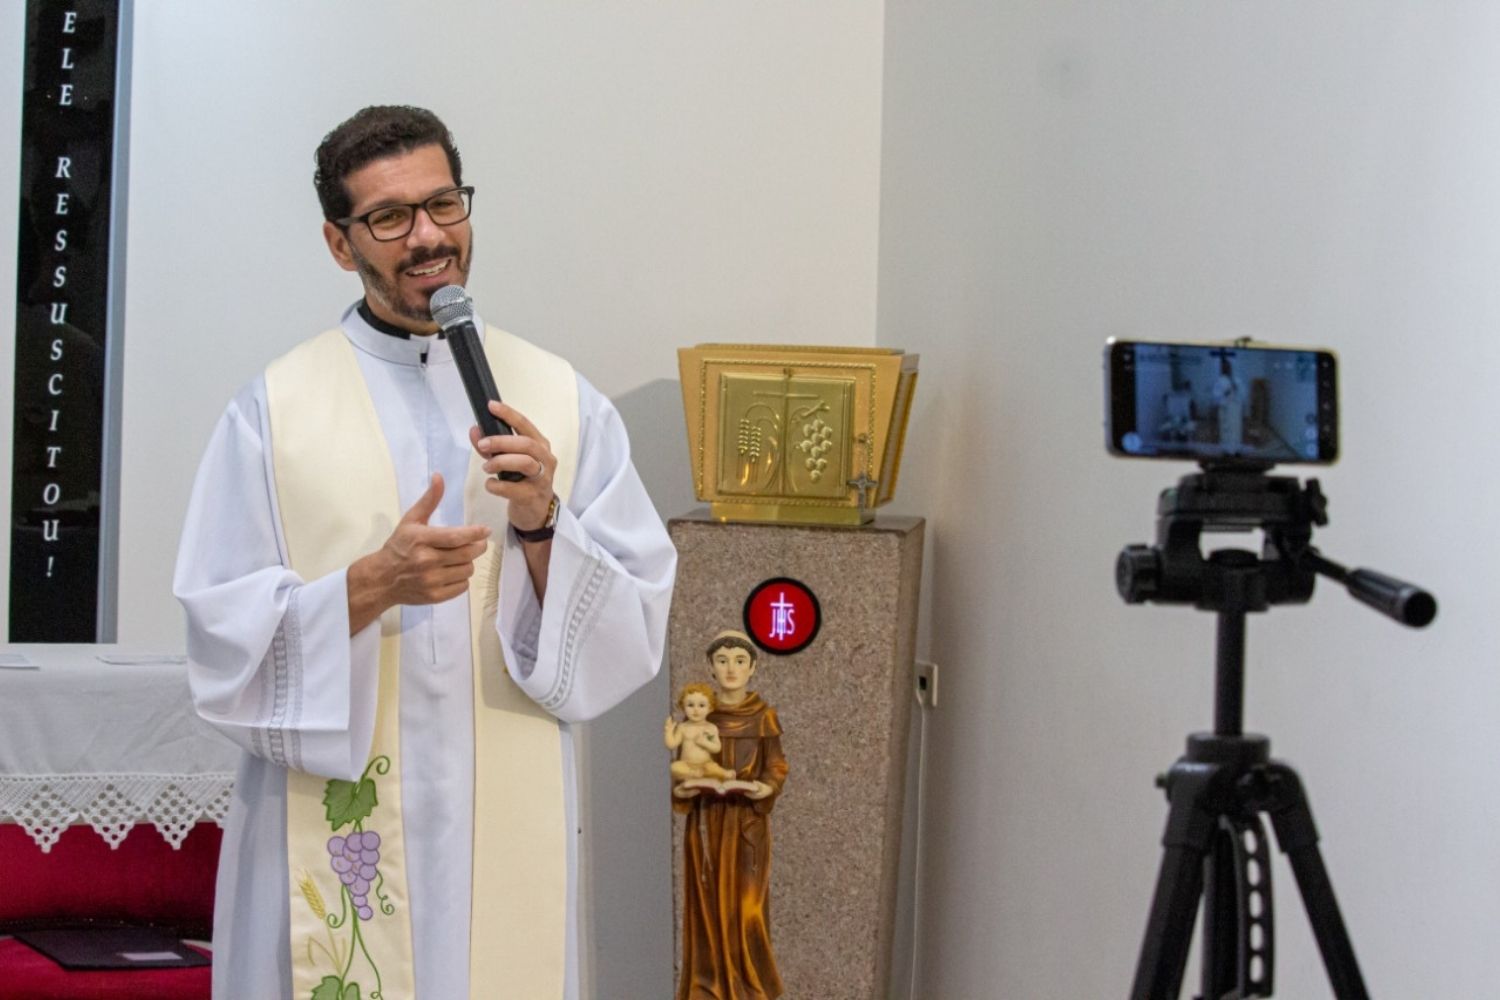 Pe Tiago Síbula transmitindo a missa pelas redes sociais na época da pandemia do COVID-19 em 2020